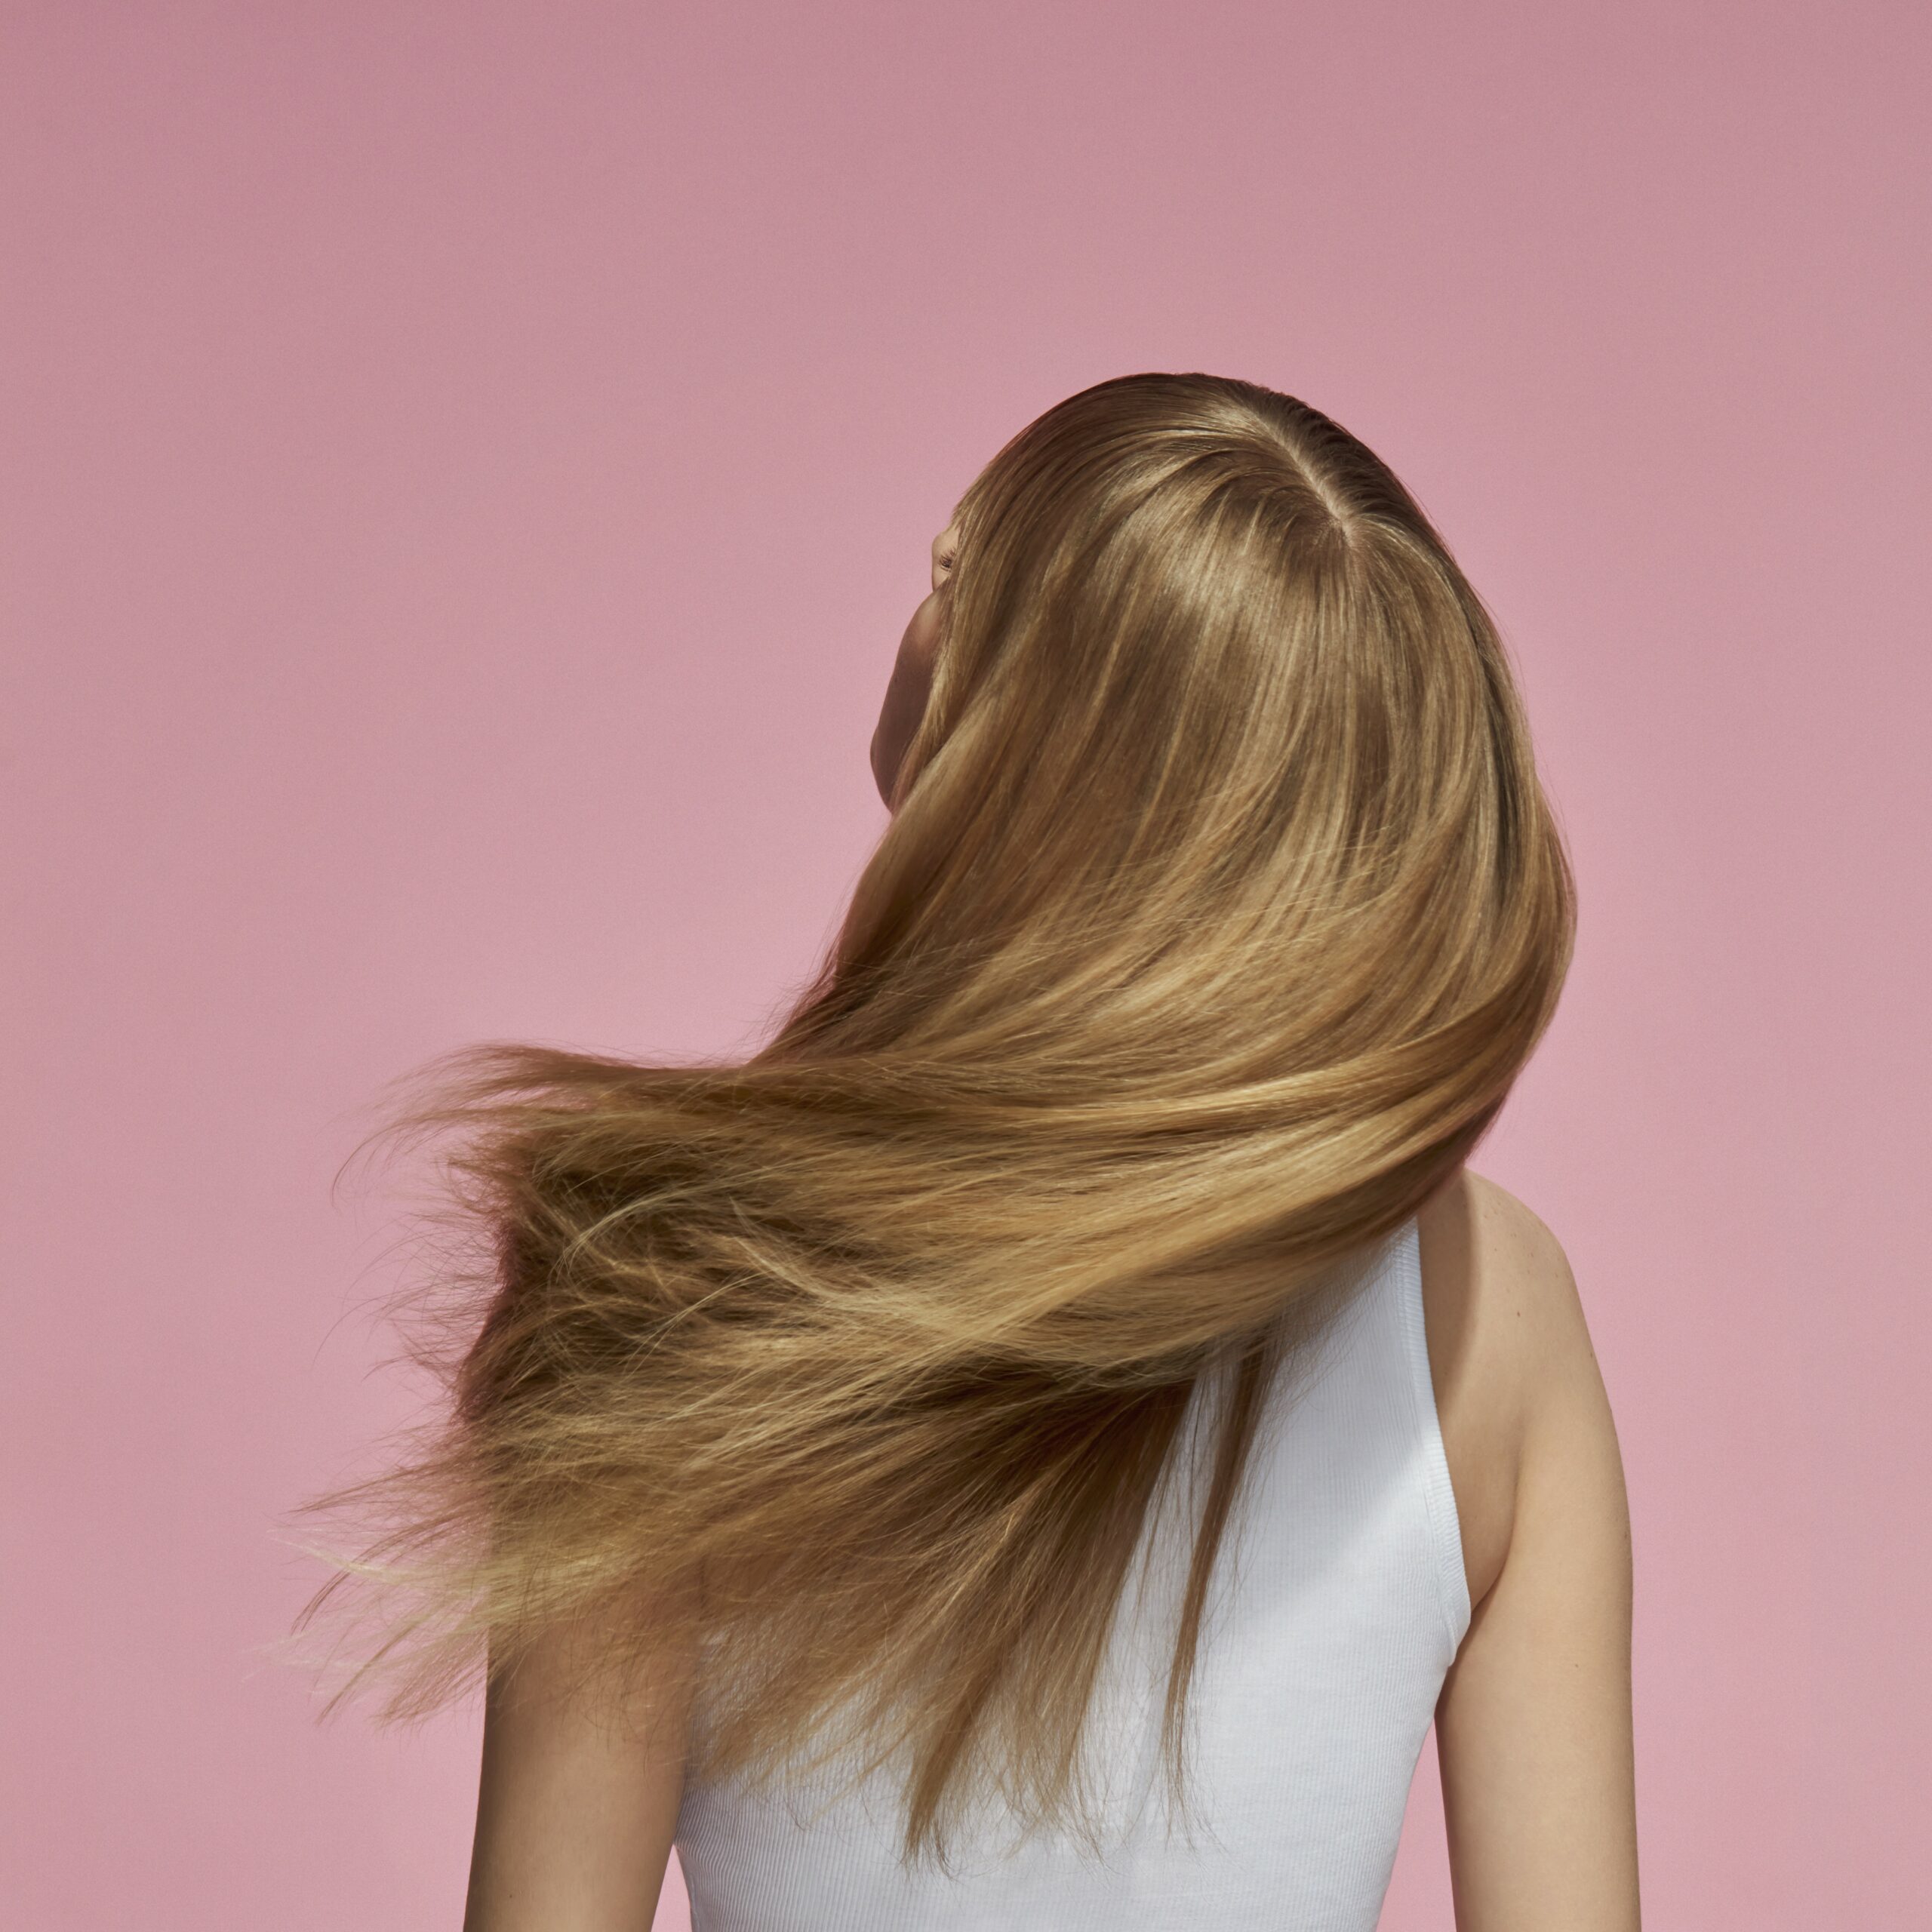 Zdrowe włosy, pełne nawilżenia: jak utrzymać nawilżone i lśniące włosy